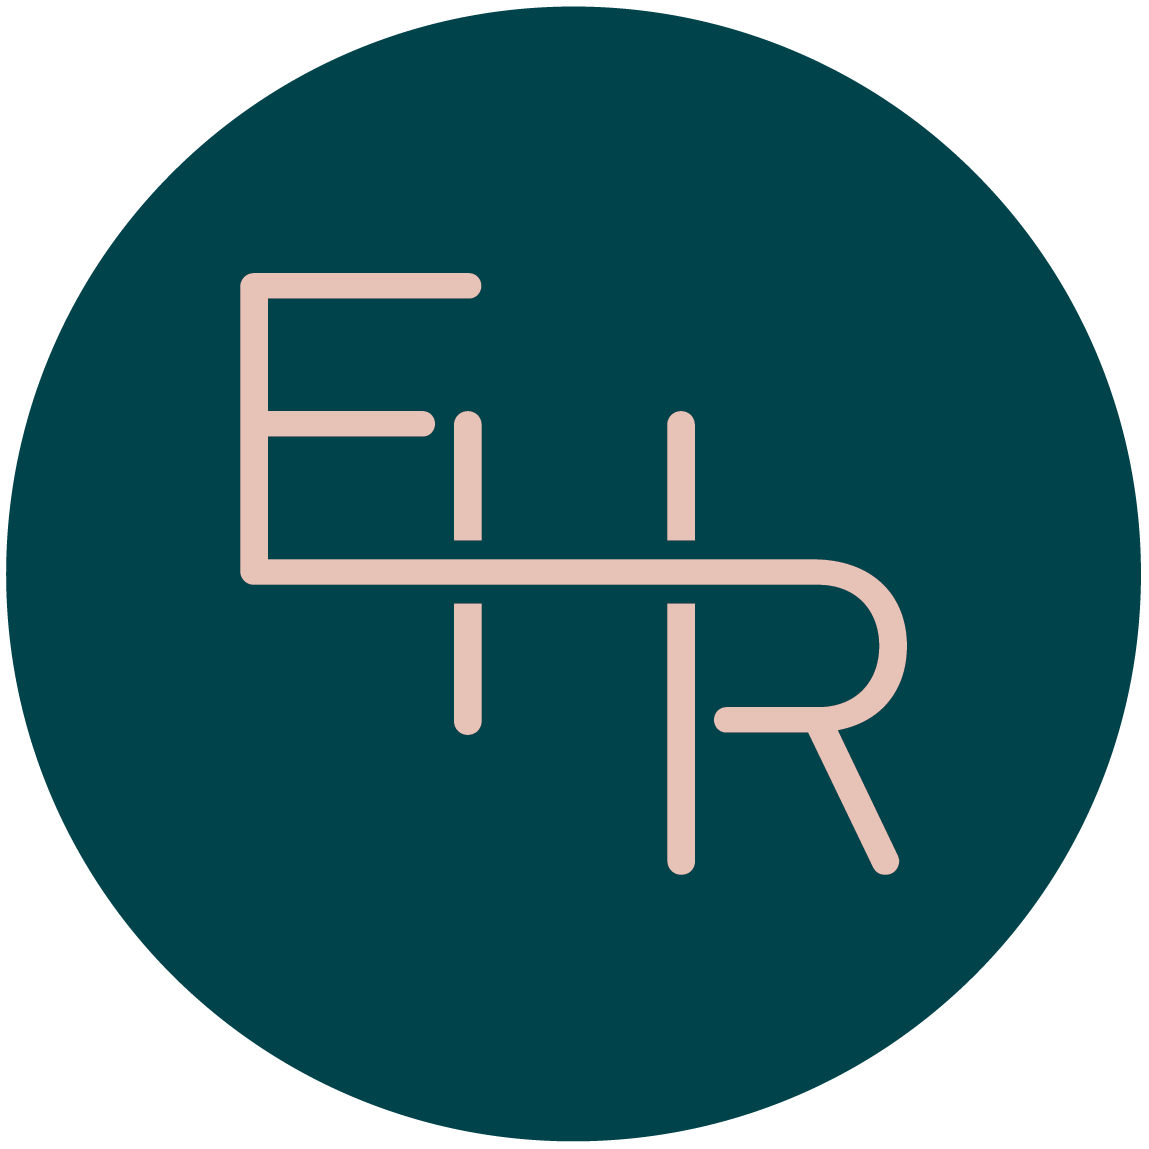 EHR Services